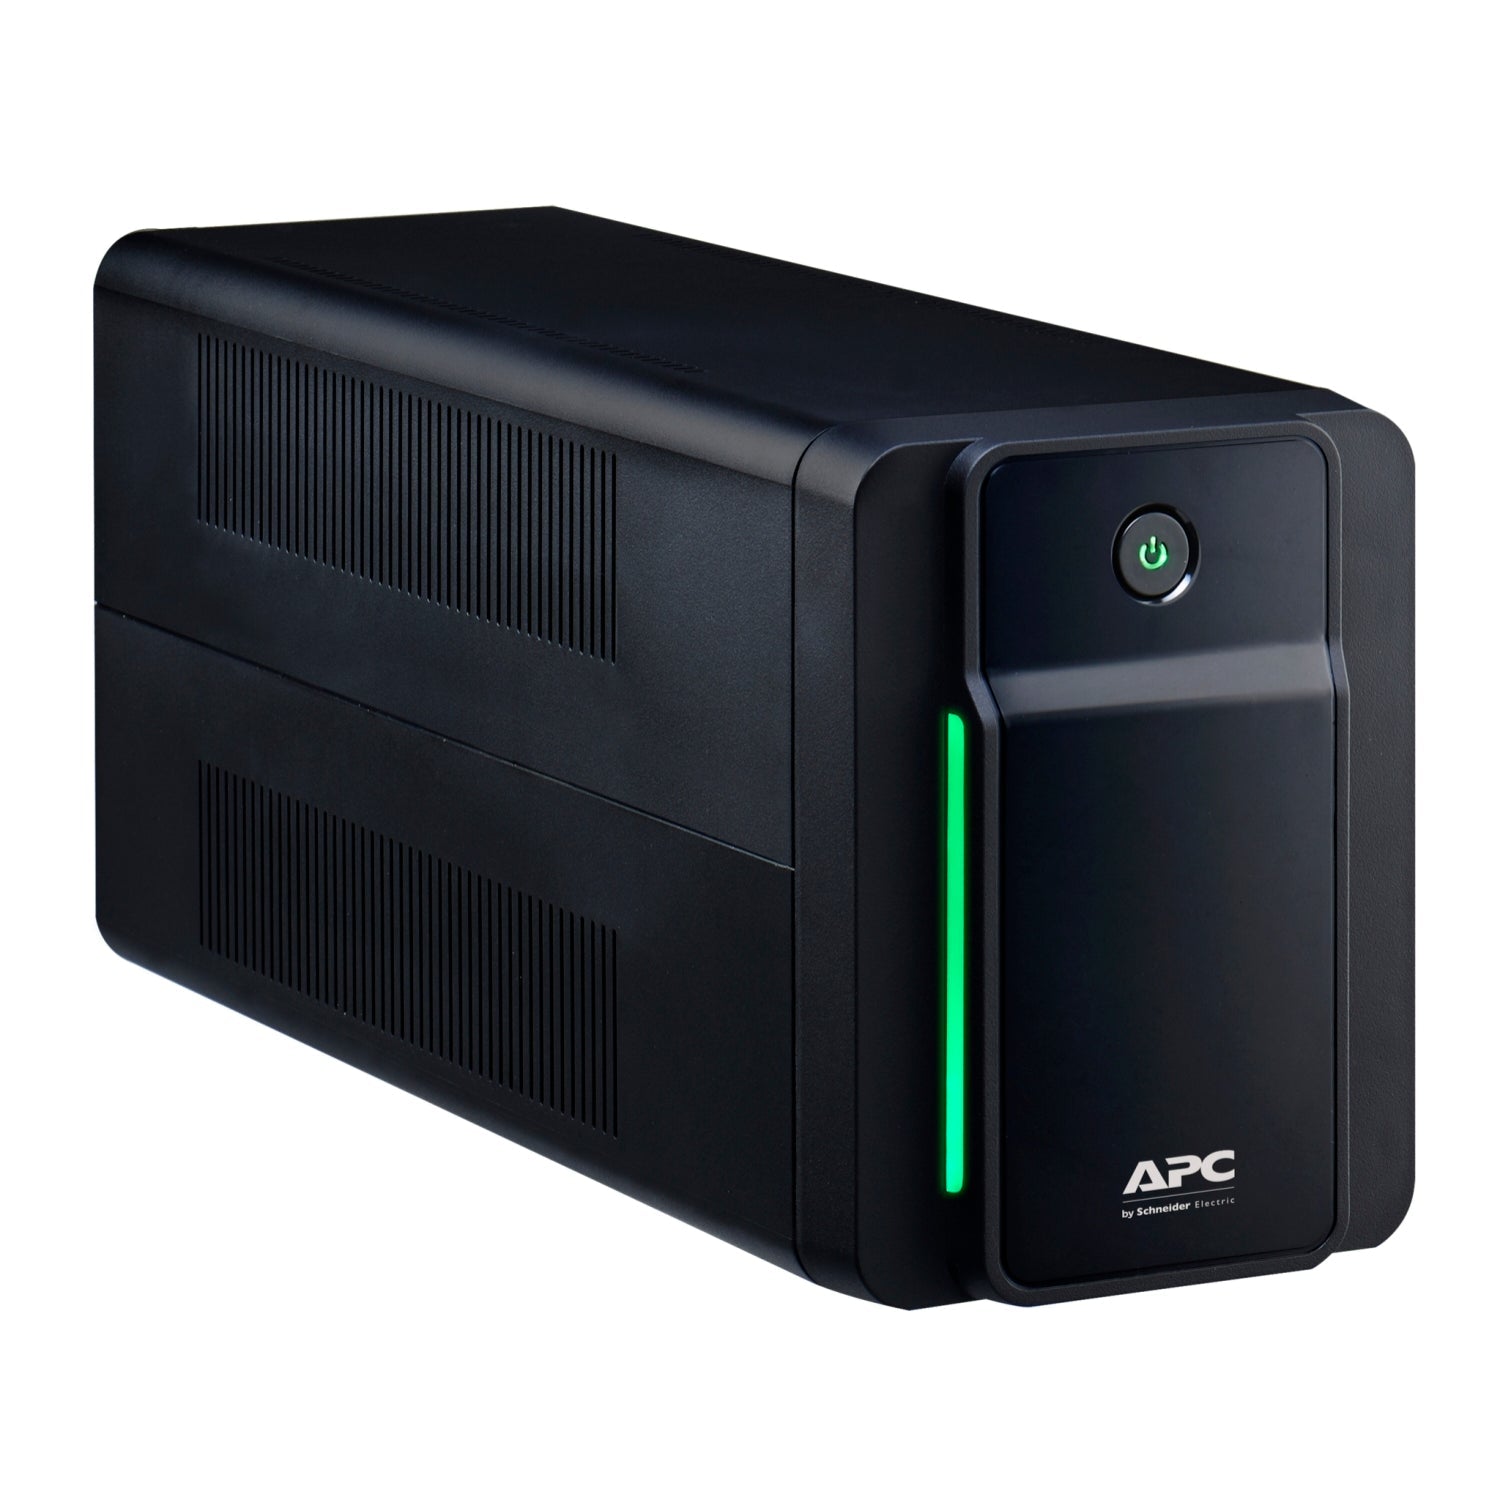 BX1600MI-AZ - APC Back-UPS 1600VA, 230V, AVR, ANZ Sockets